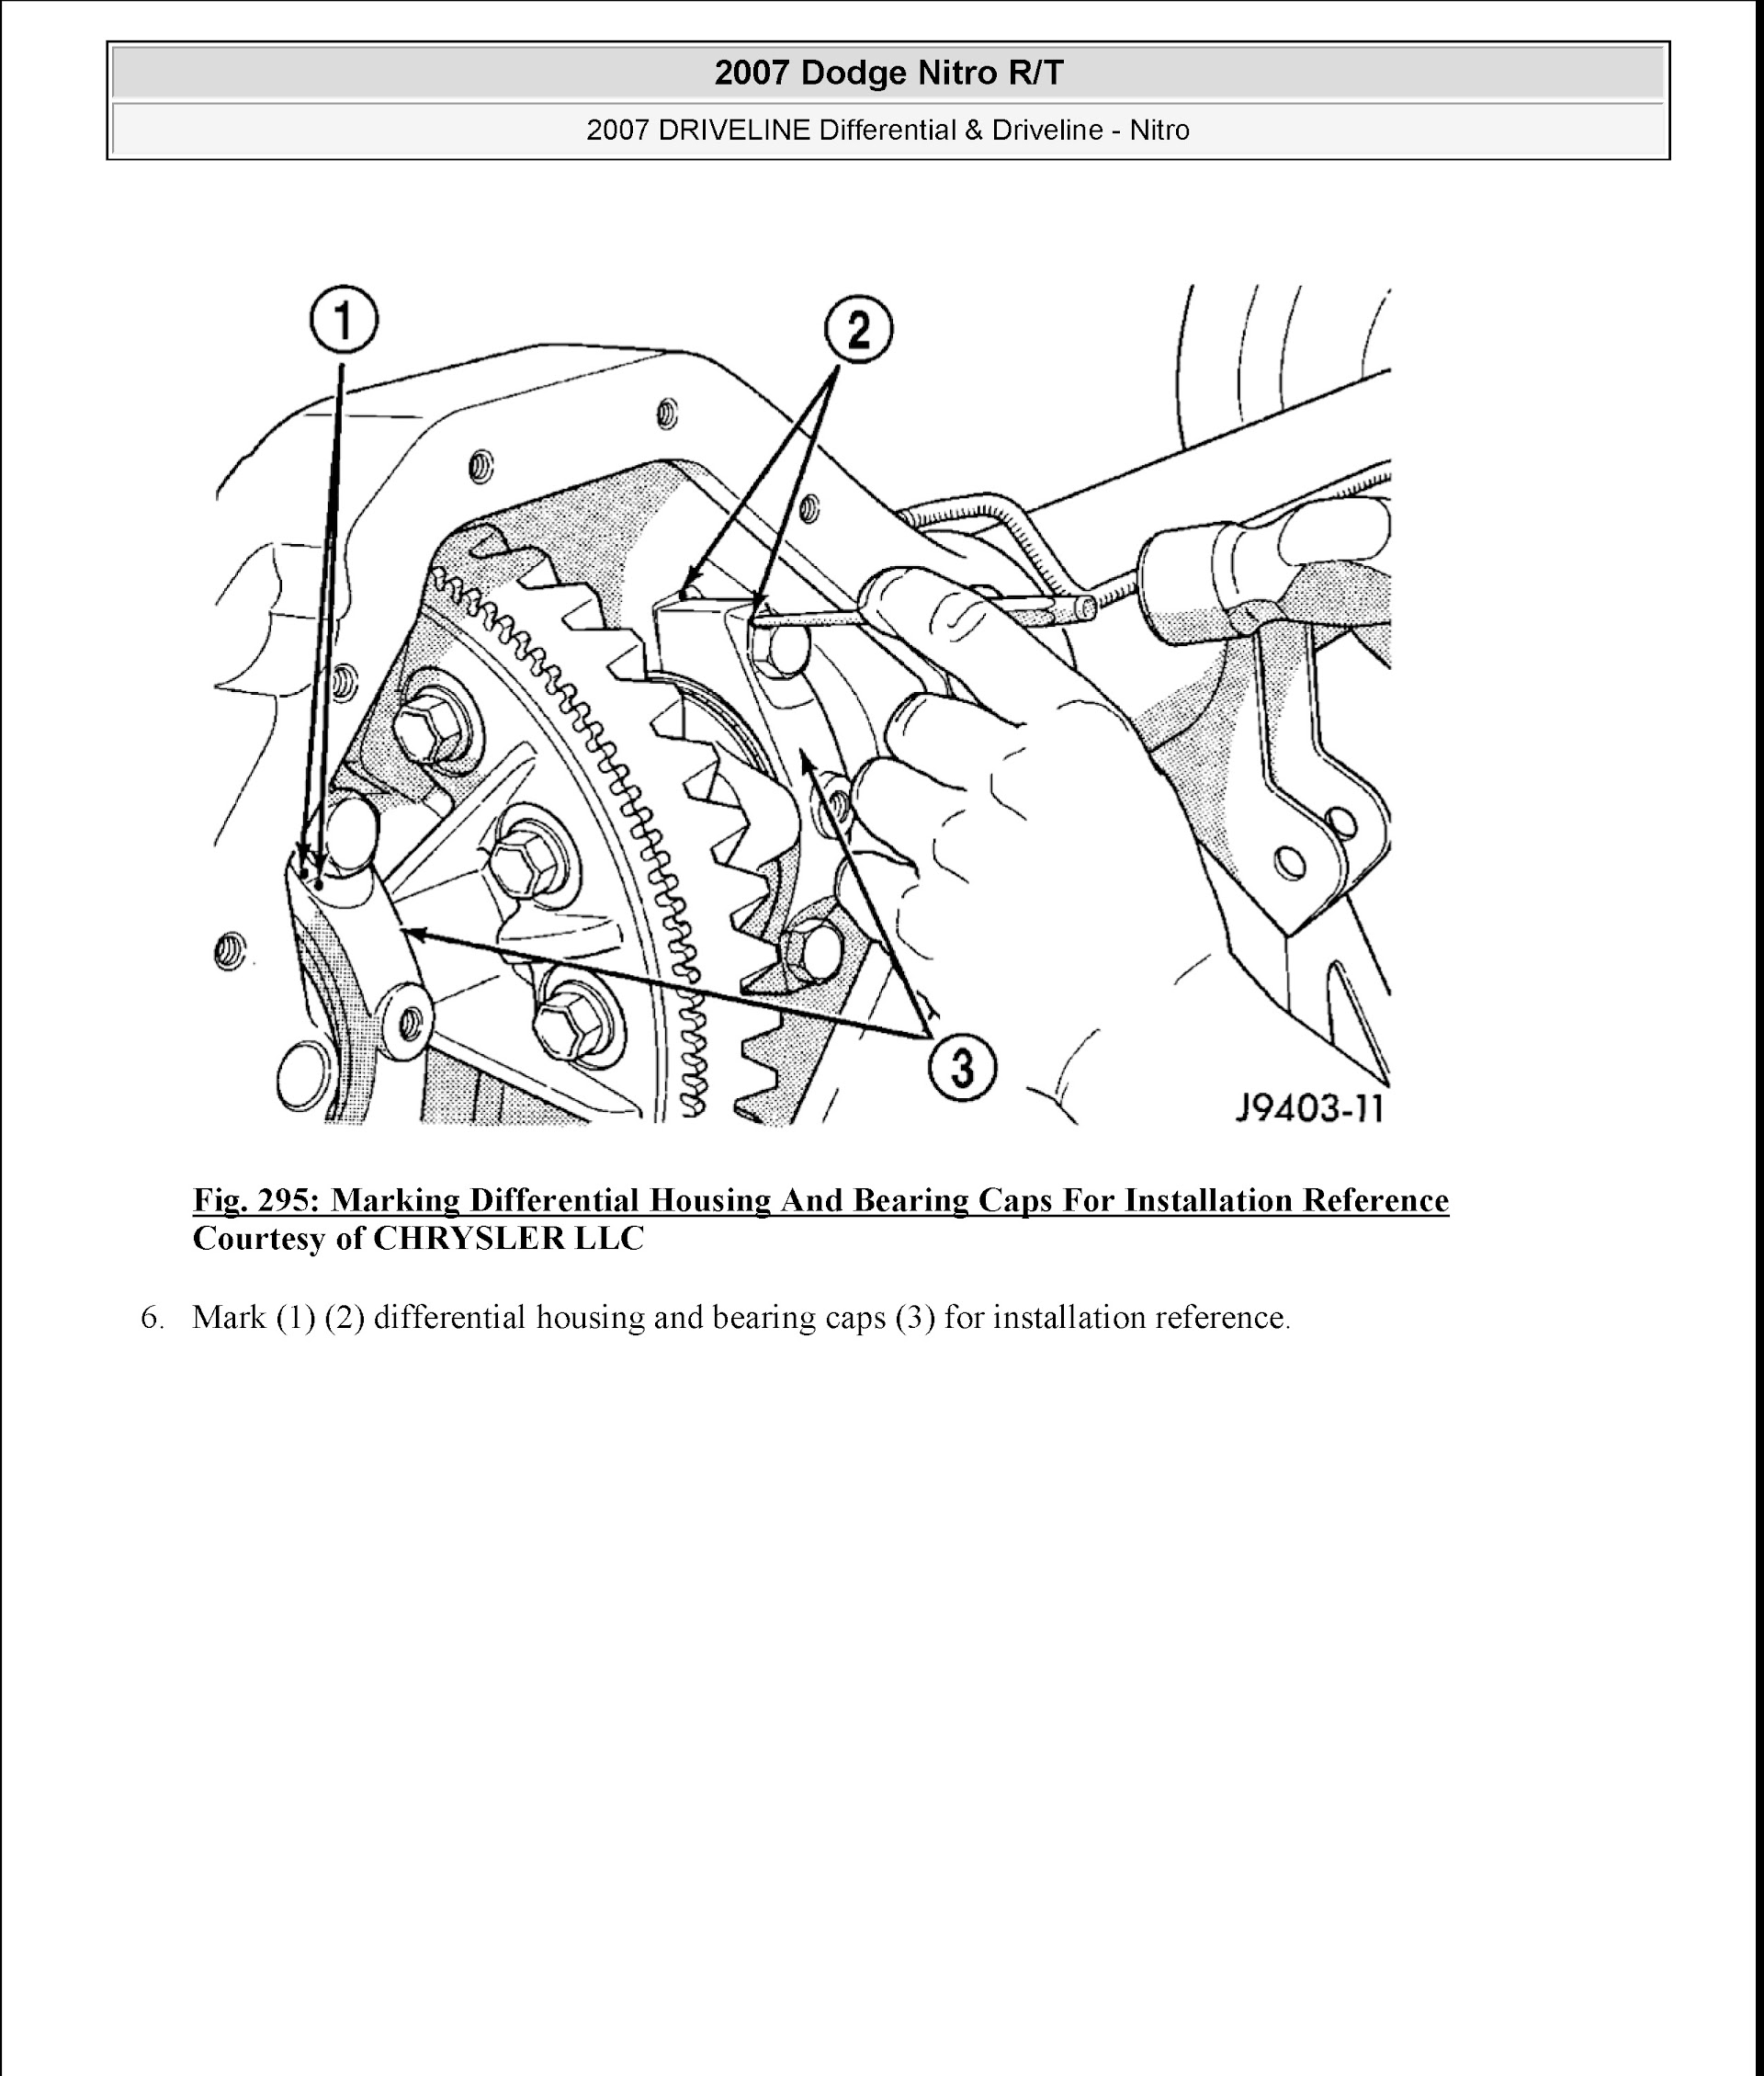 Download 2007 Dodge Nitro R/T Repair Manual